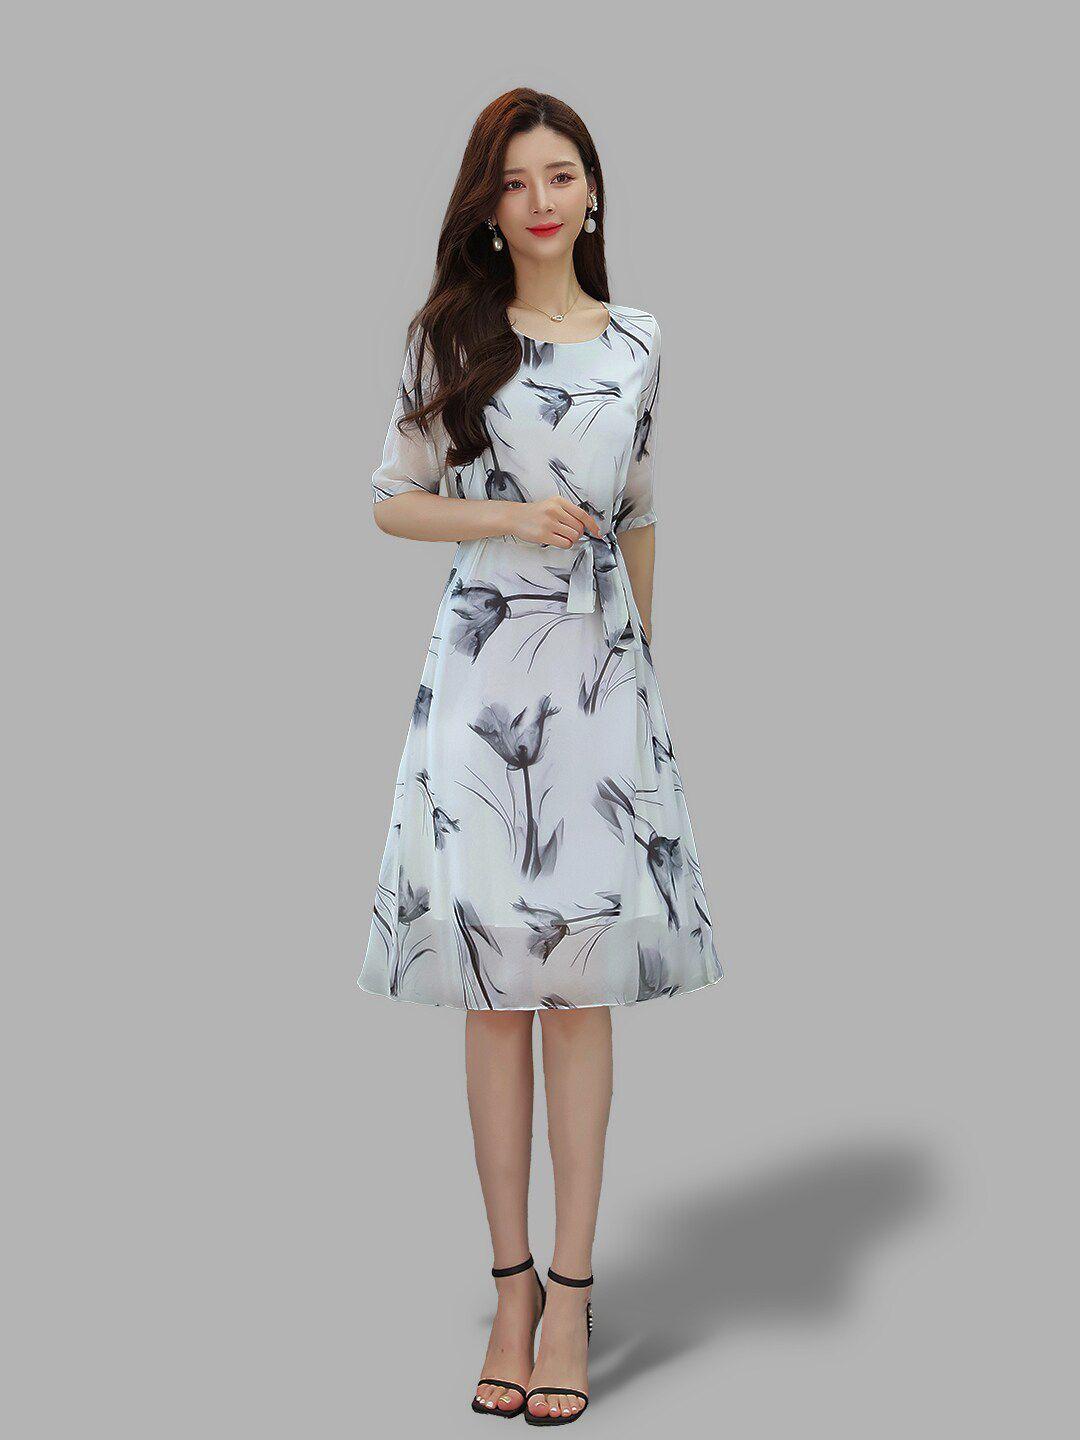 jc collection women grey floral print dress